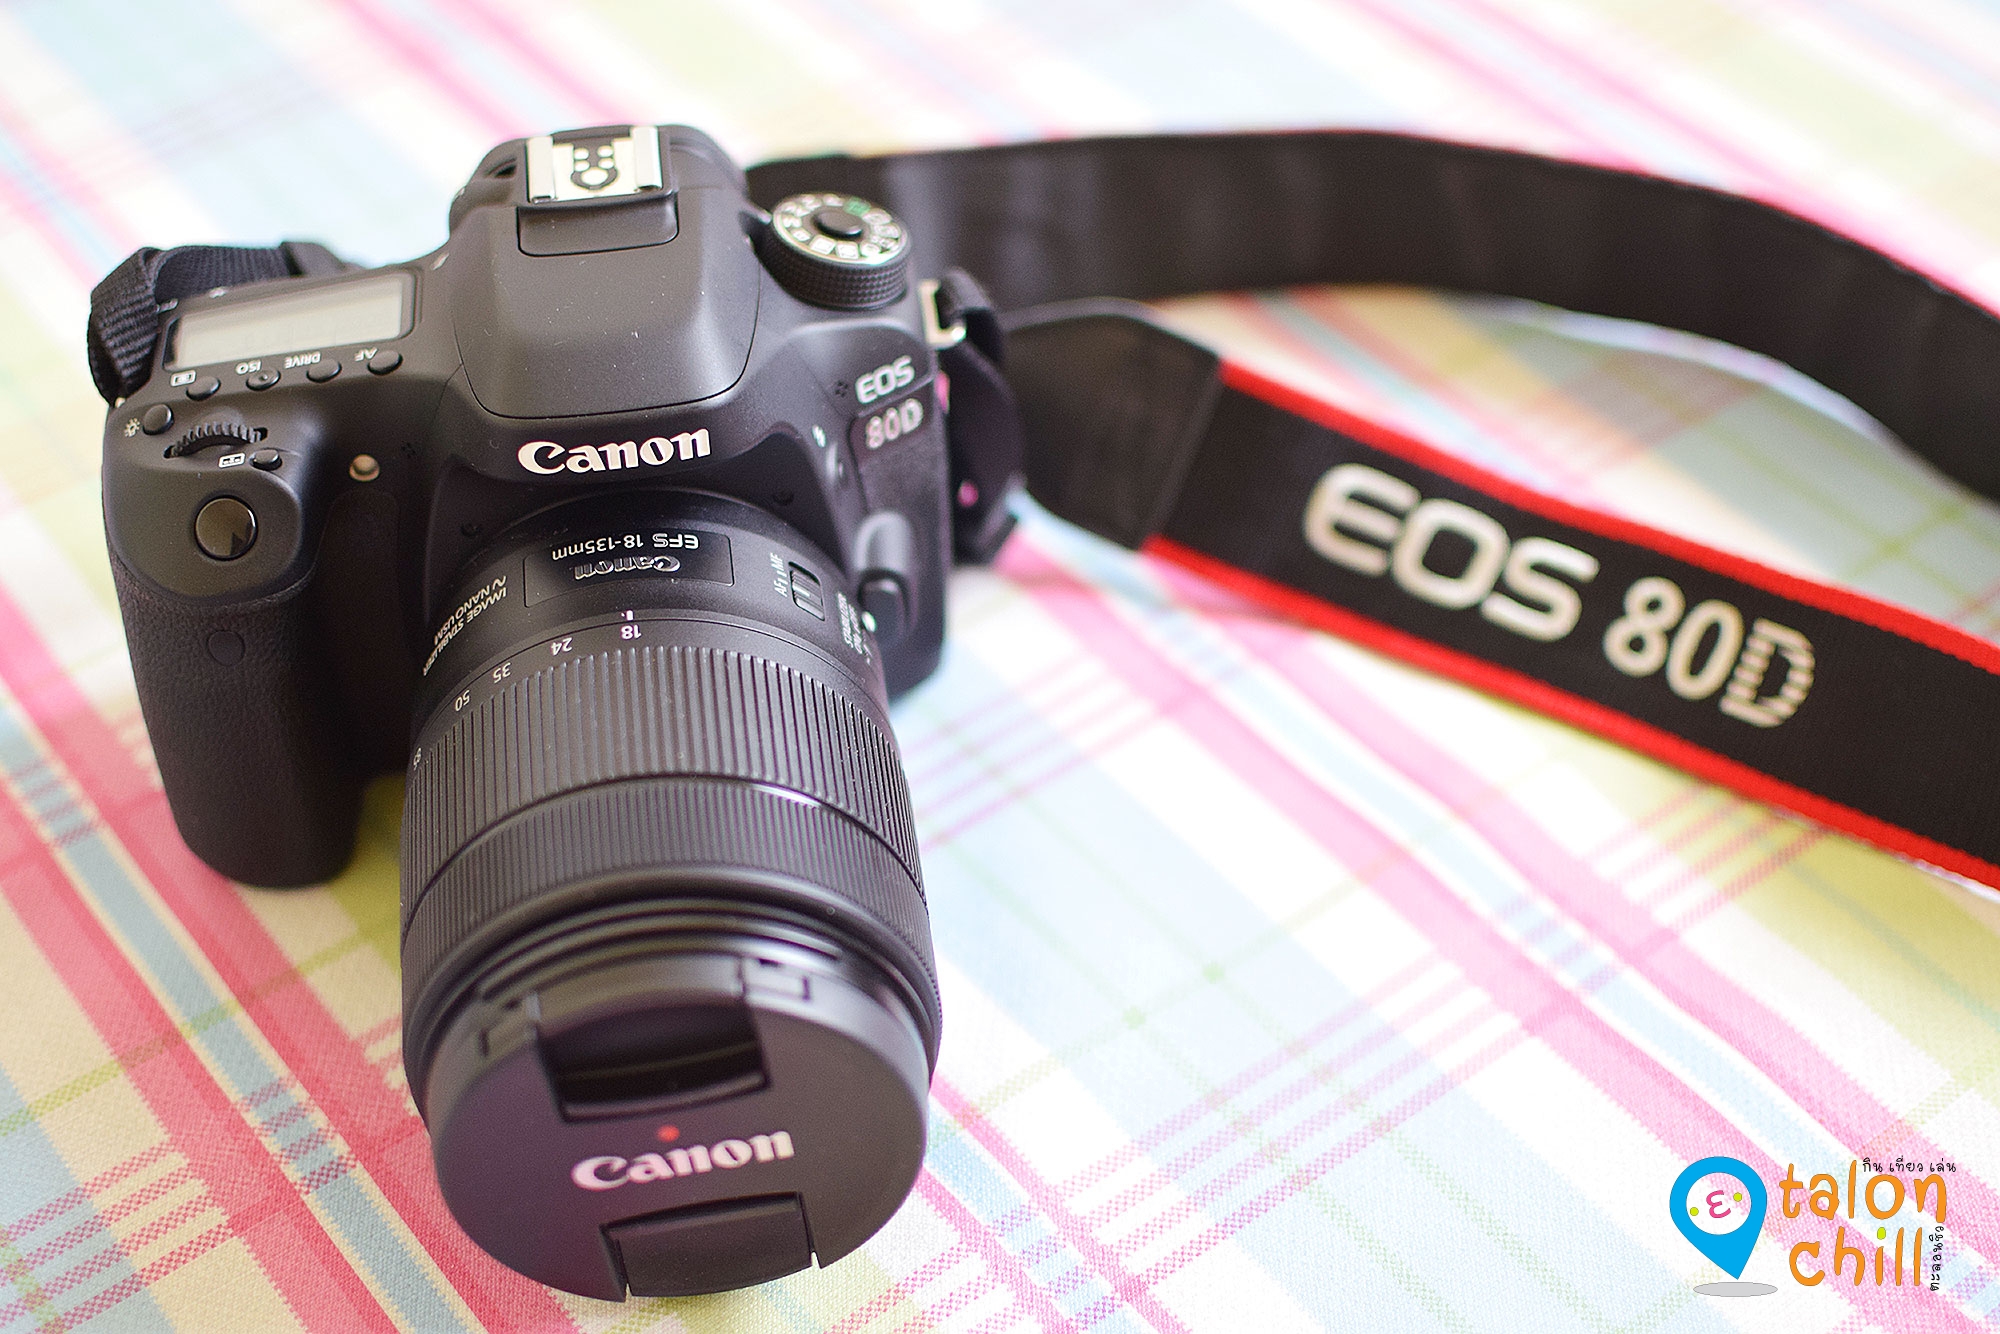 [Review] กล้องแคนนอนรุ่น Canon EOS 80D ฉบับตะลอนชิว